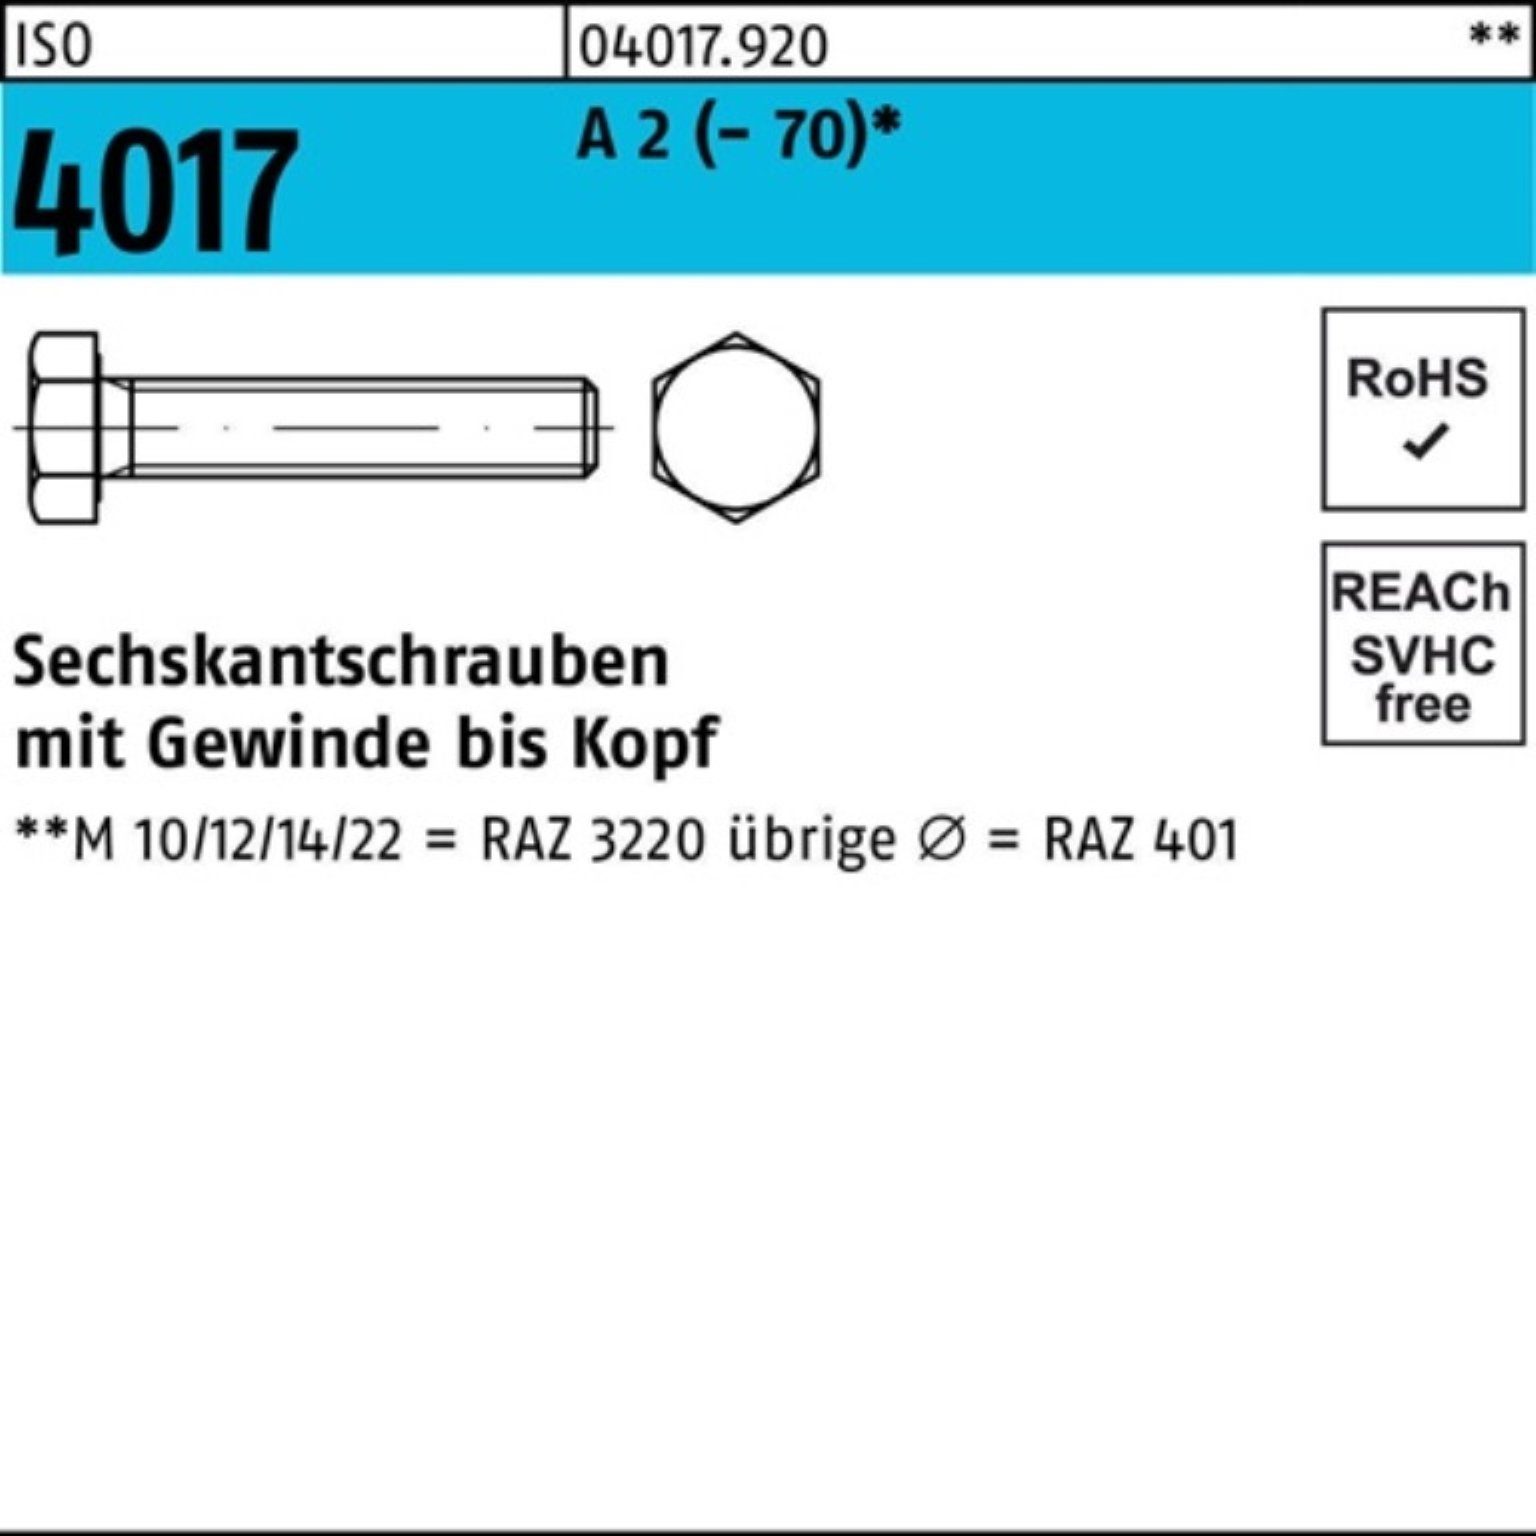 Bufab Sechskantschraube 200er Pack Sechskantschraube ISO 4017 VG M8x 20 A 2 (70) 200 Stück